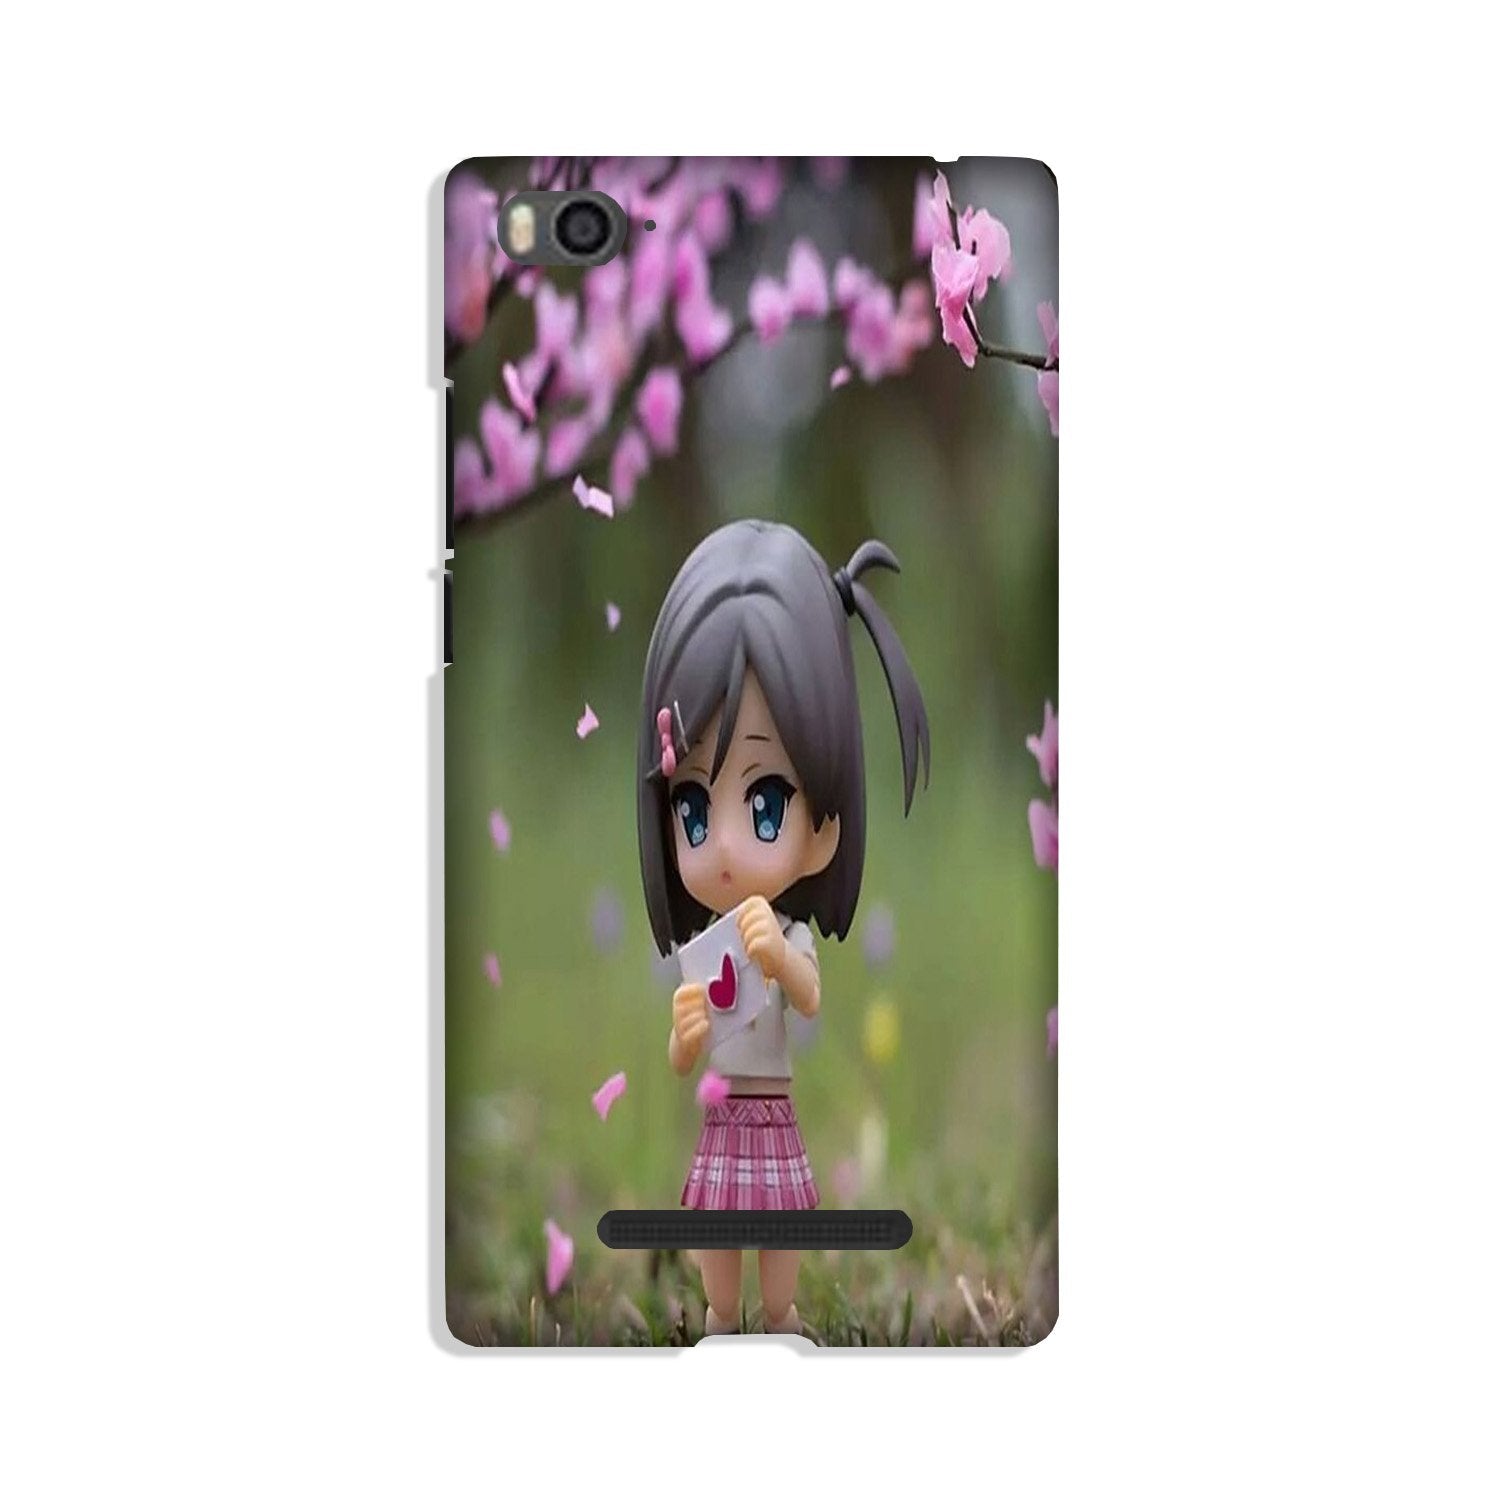 Cute Girl Case for Xiaomi Redmi 5A